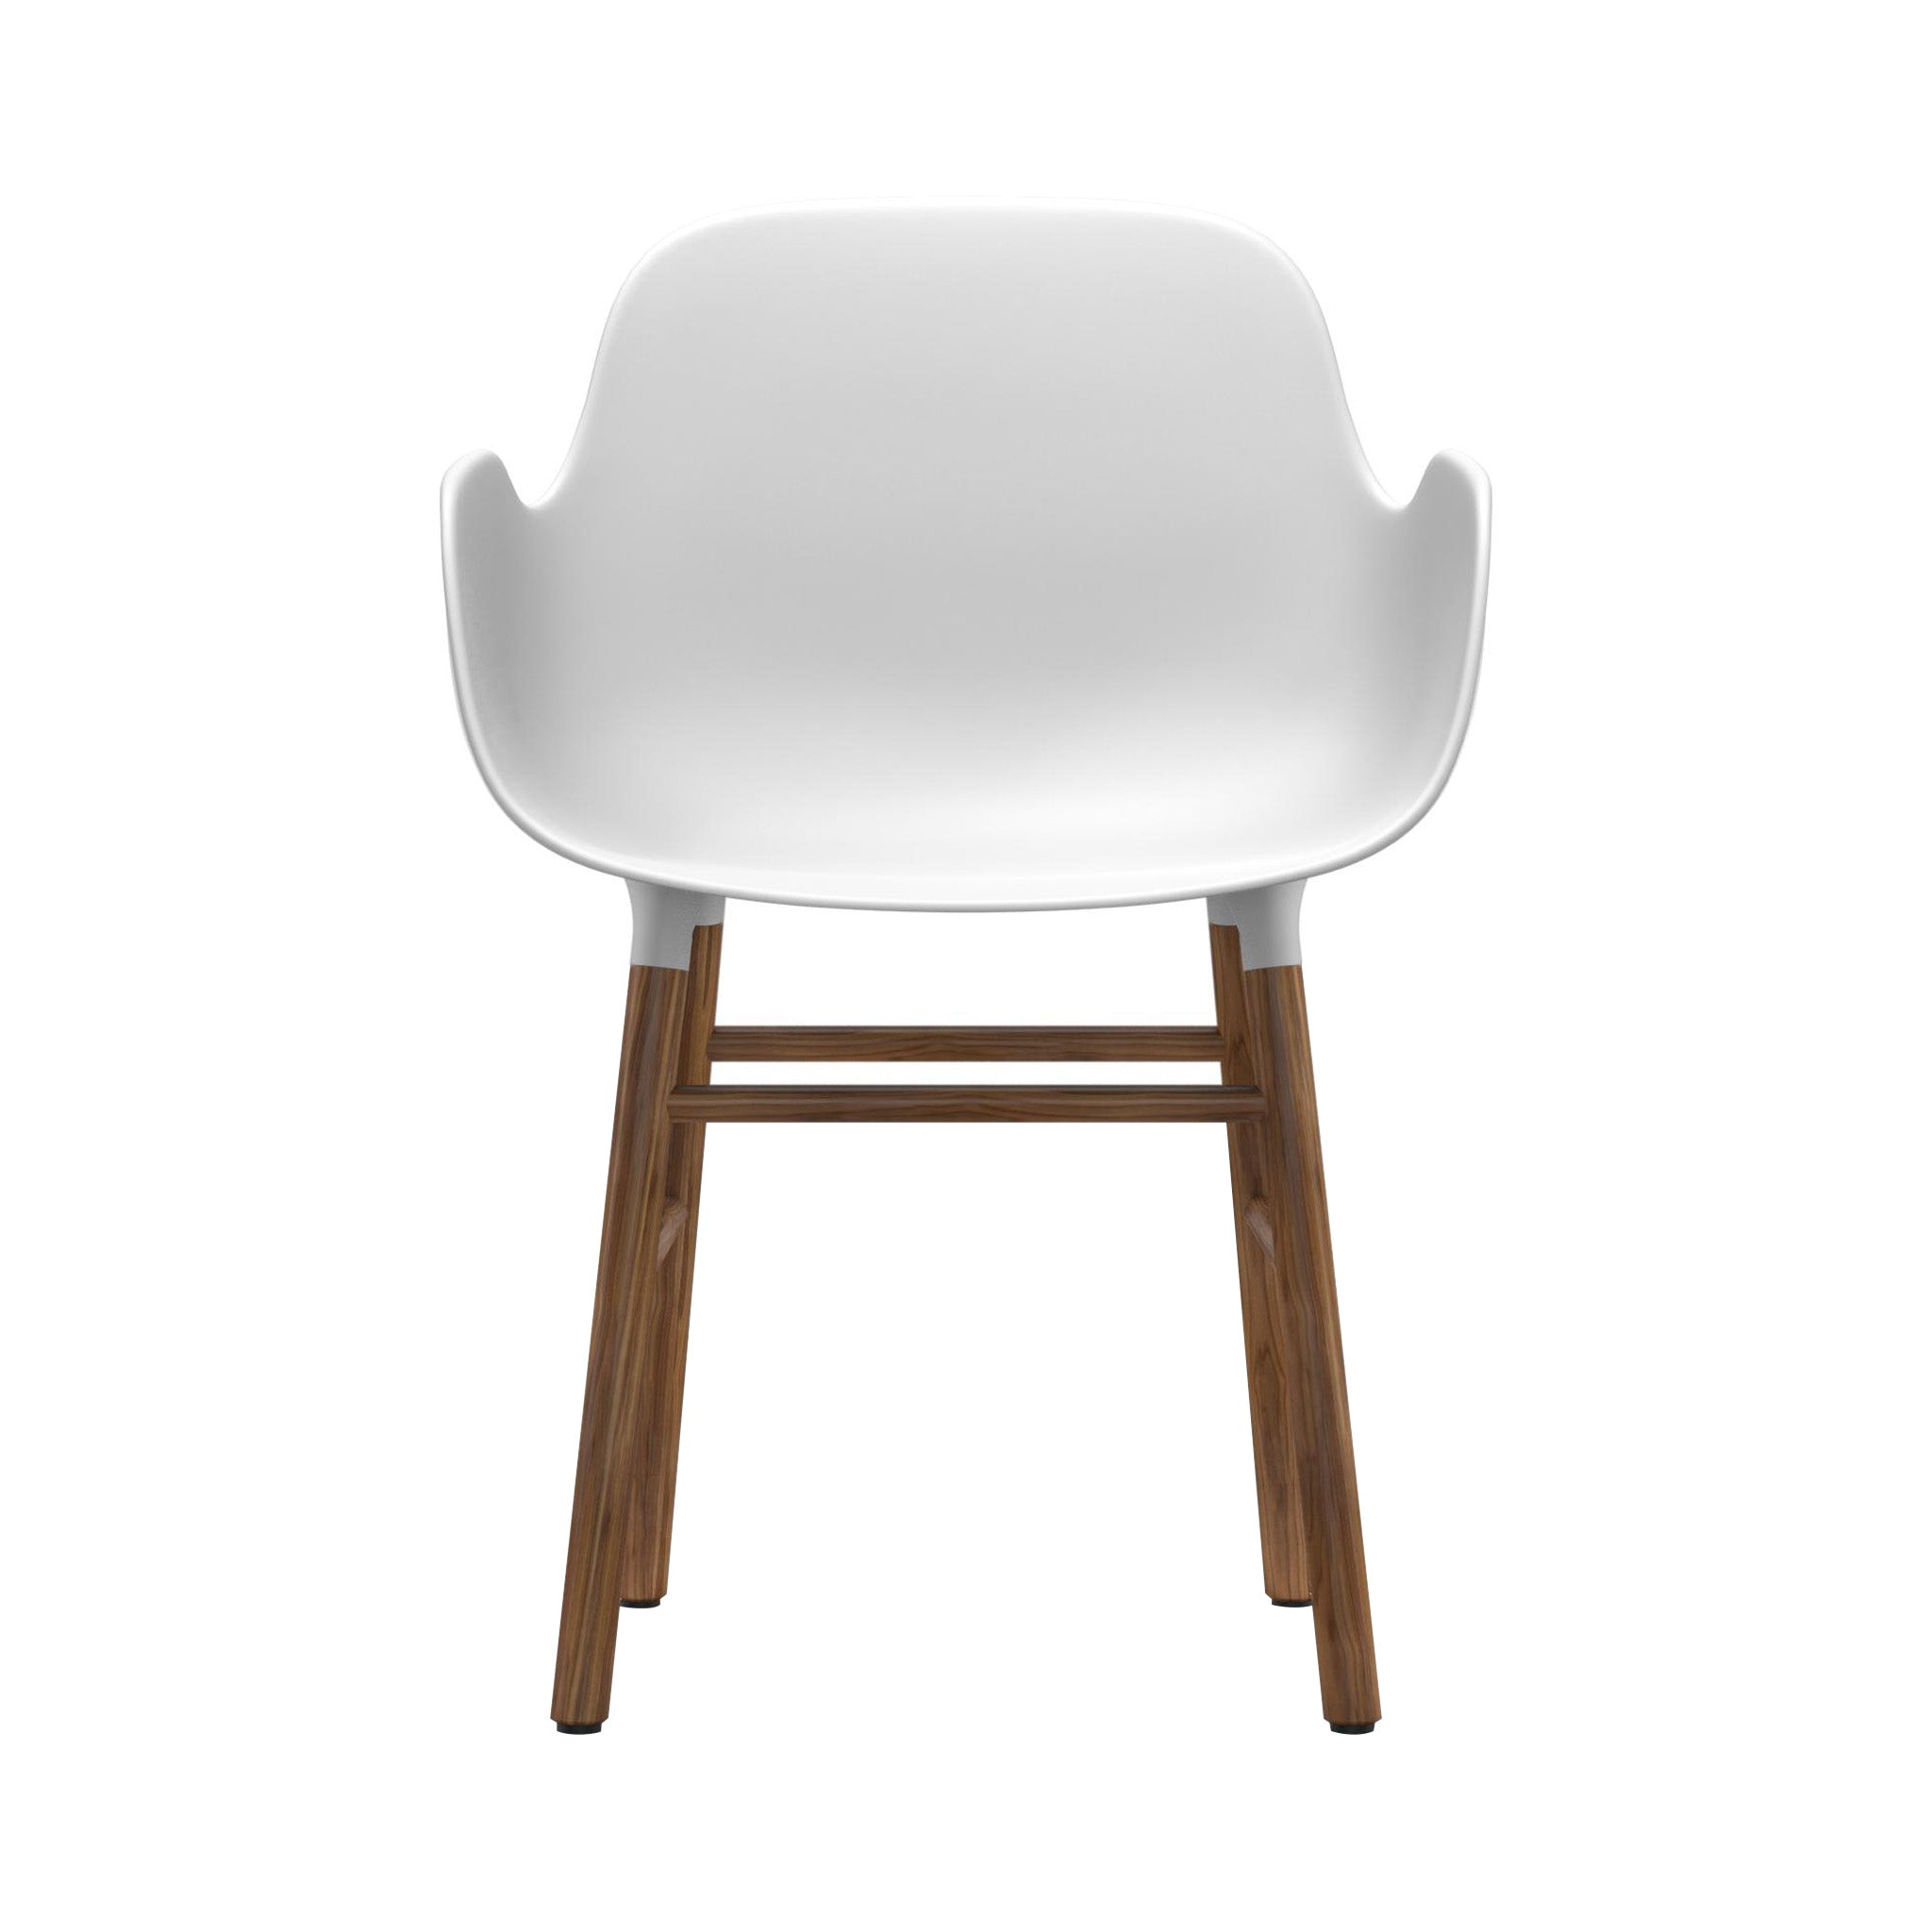 Form Armchair: Walnut or Oak Legs + White + Walnut